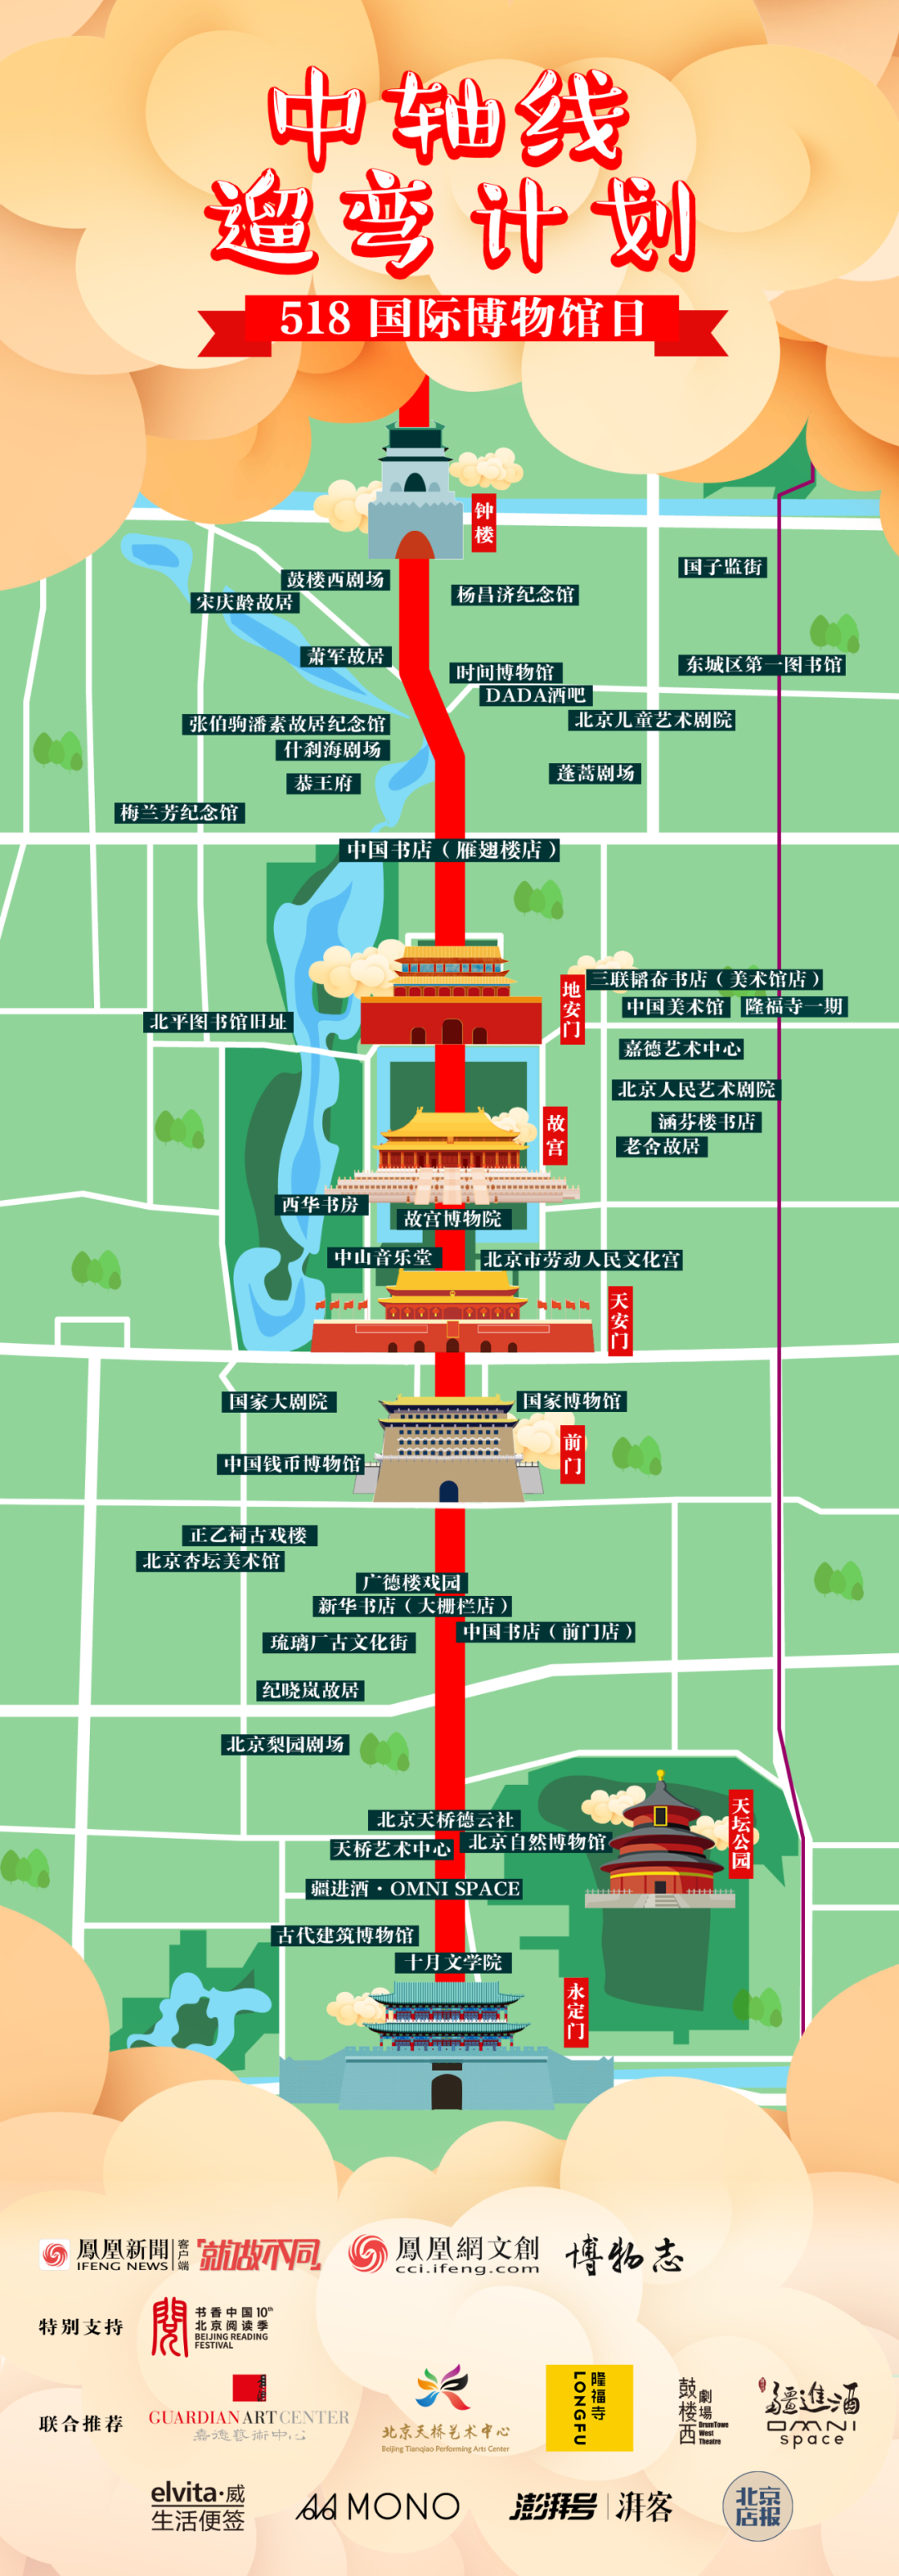 活动预告 5月18日,逛遍北京中轴线沿线的精华